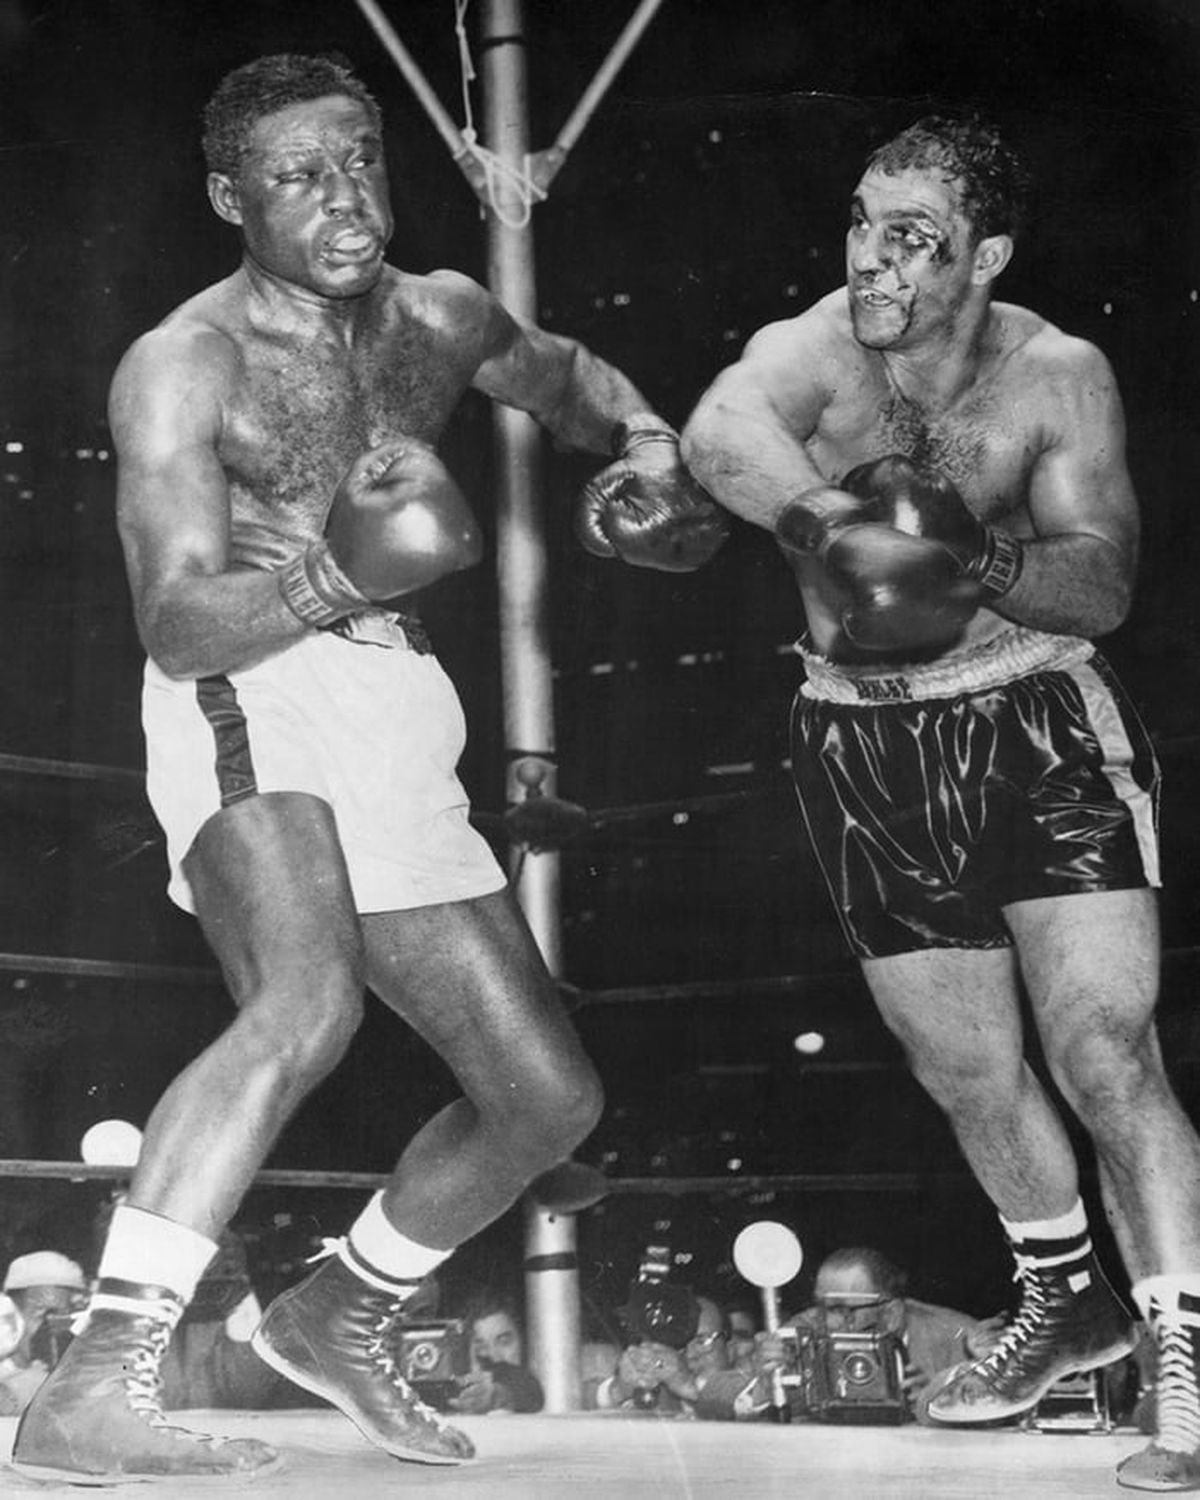 El 17 de junio 1954 Y, en el Yankee Stadium neoyorquino, Marciano le GPP 15 (unánime)  a Ezzard Charles, otro ex campeón mundial. Esta fue la única de sus defensas donde completó 15 asaltos, y en la que sufrió un profundo corte en su párpado izquierdo. En la revancha, disputada en el mismo escenario el 17 de septiembre siguiente, Rocky le GKO 8.